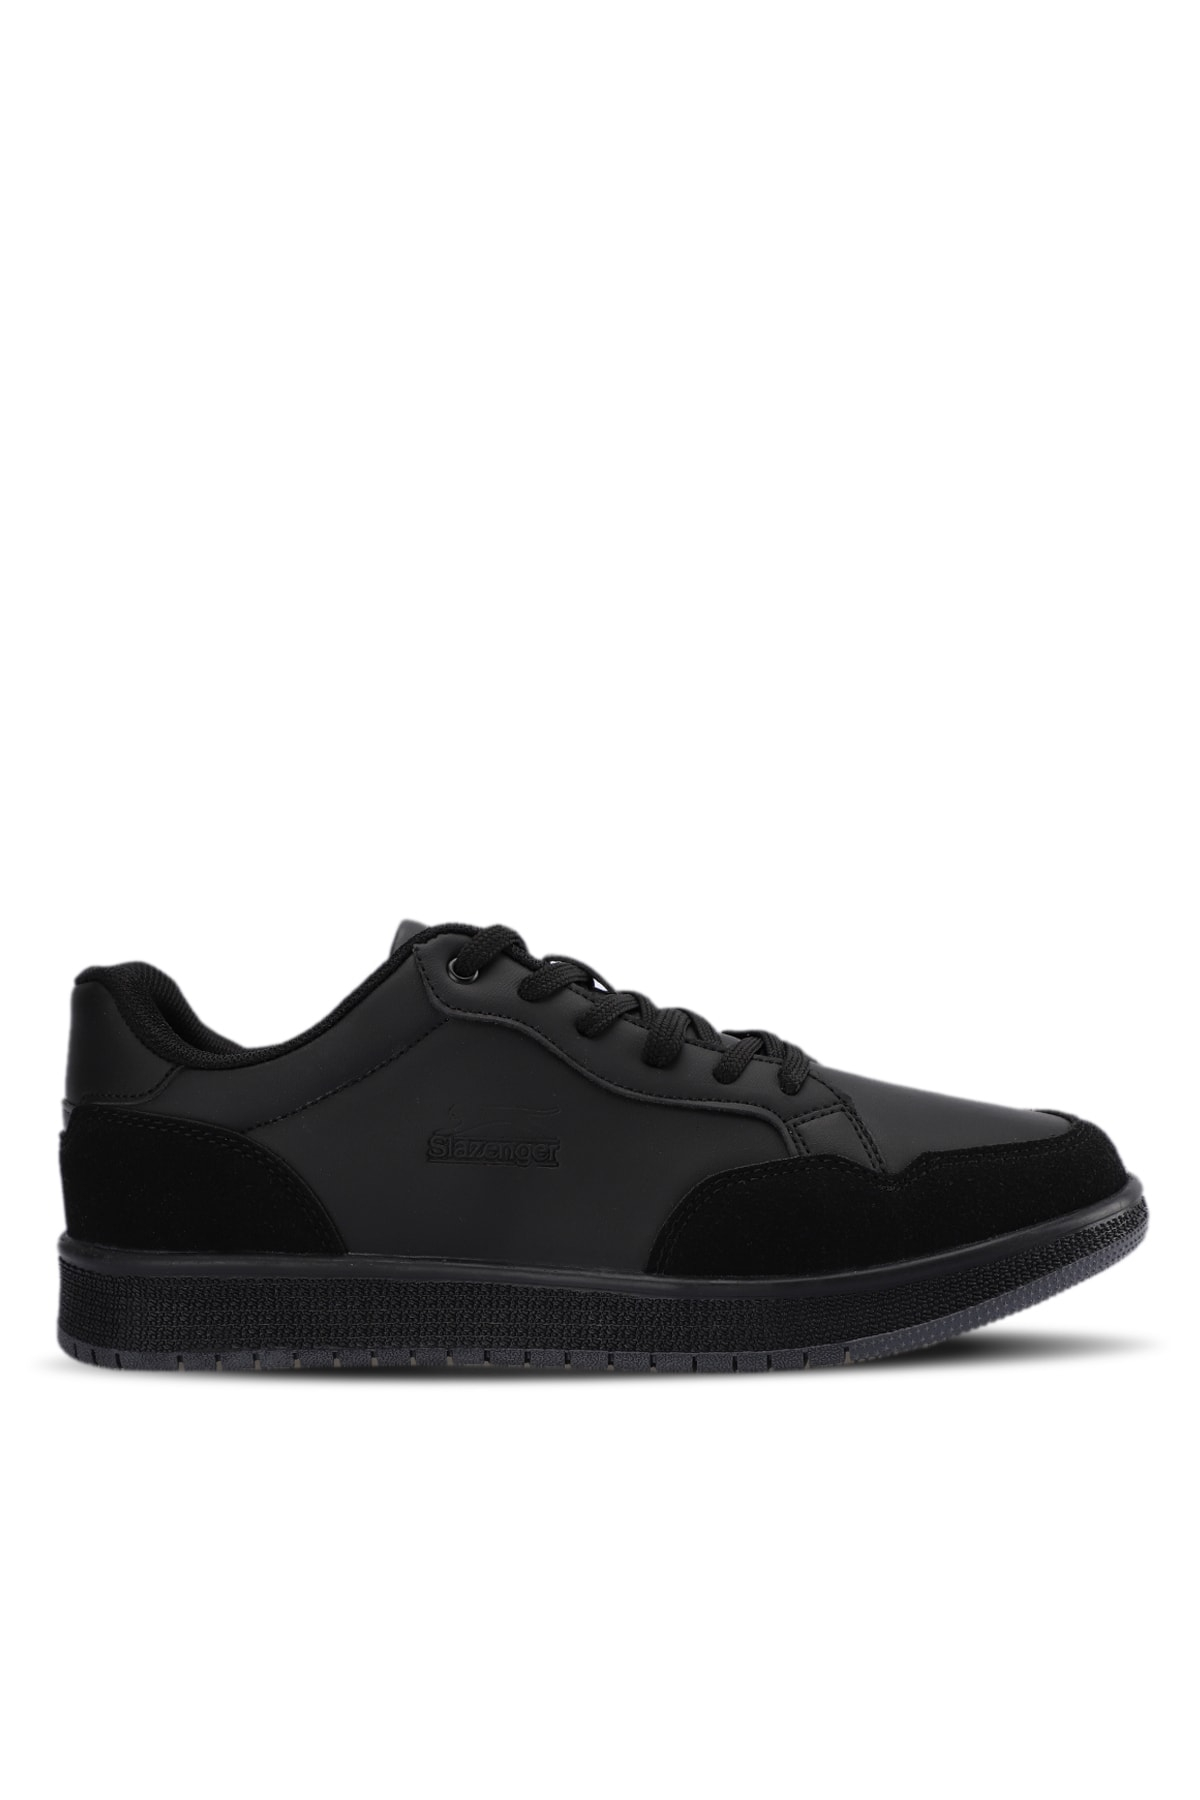 Slazenger PAIR I Sneaker Men's Shoes Black / Black